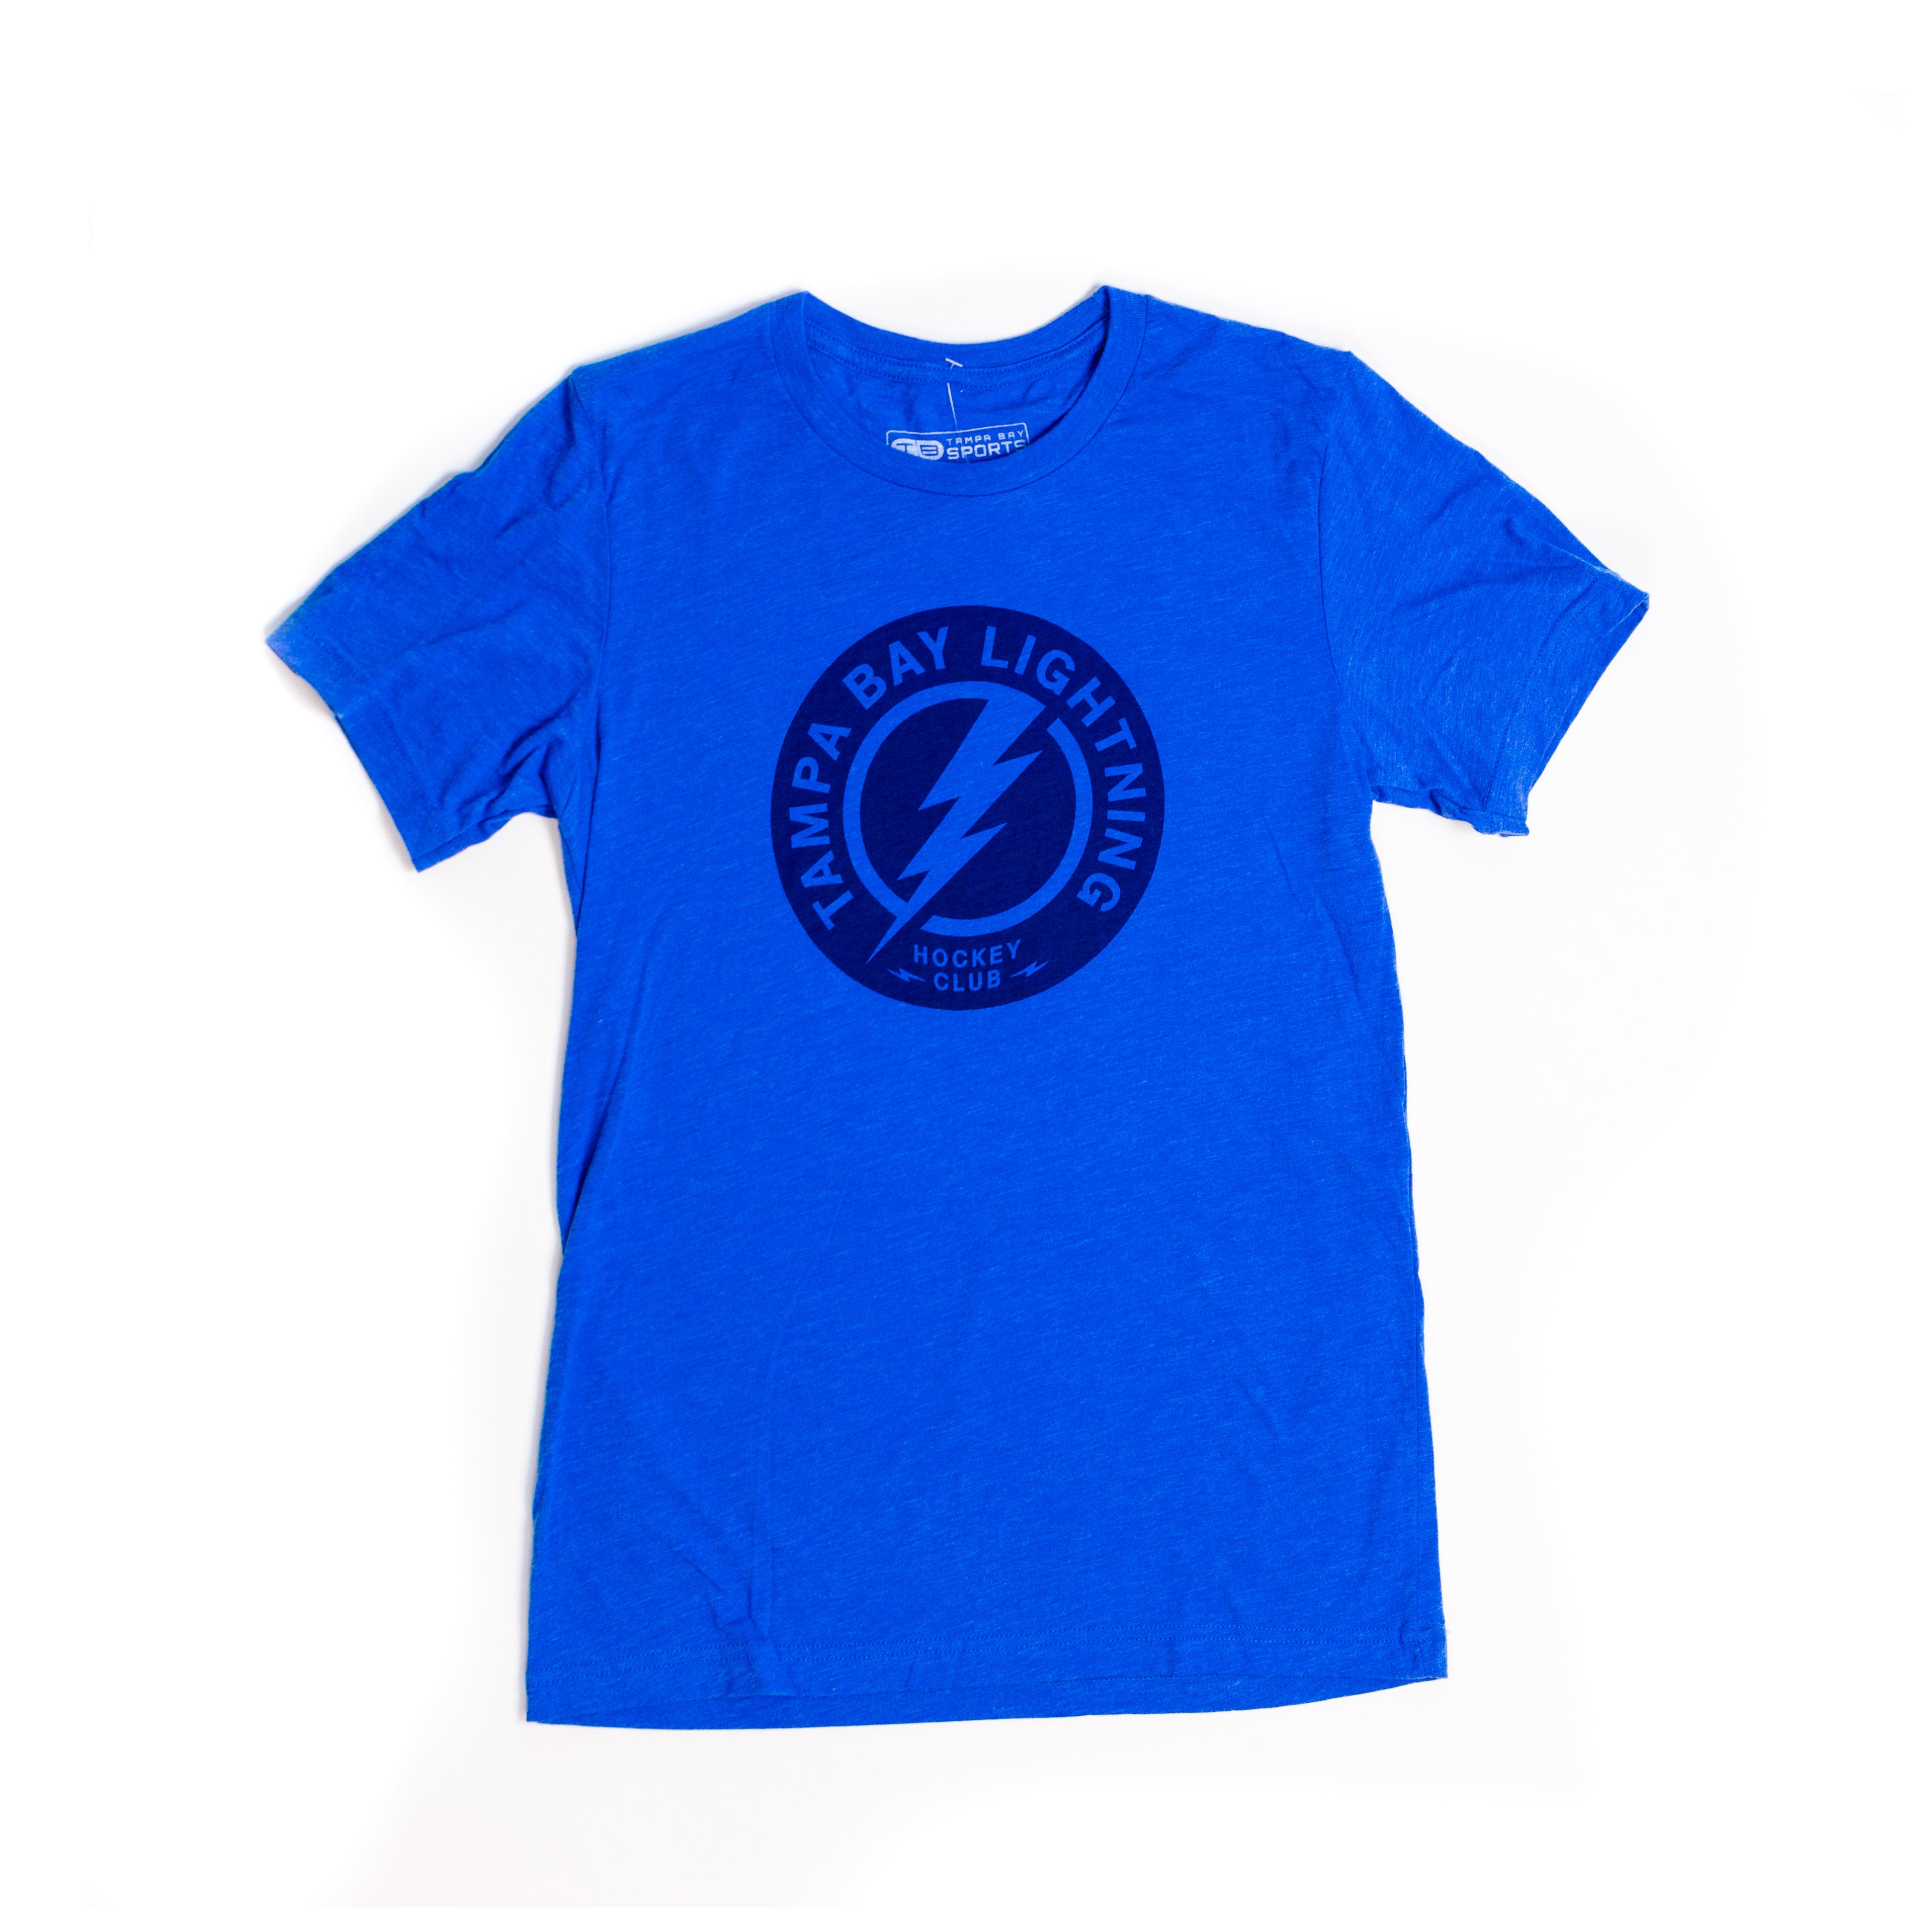 Tampa Bay Rays Homage x Topps Tri-Blend T-Shirt - Light Blue